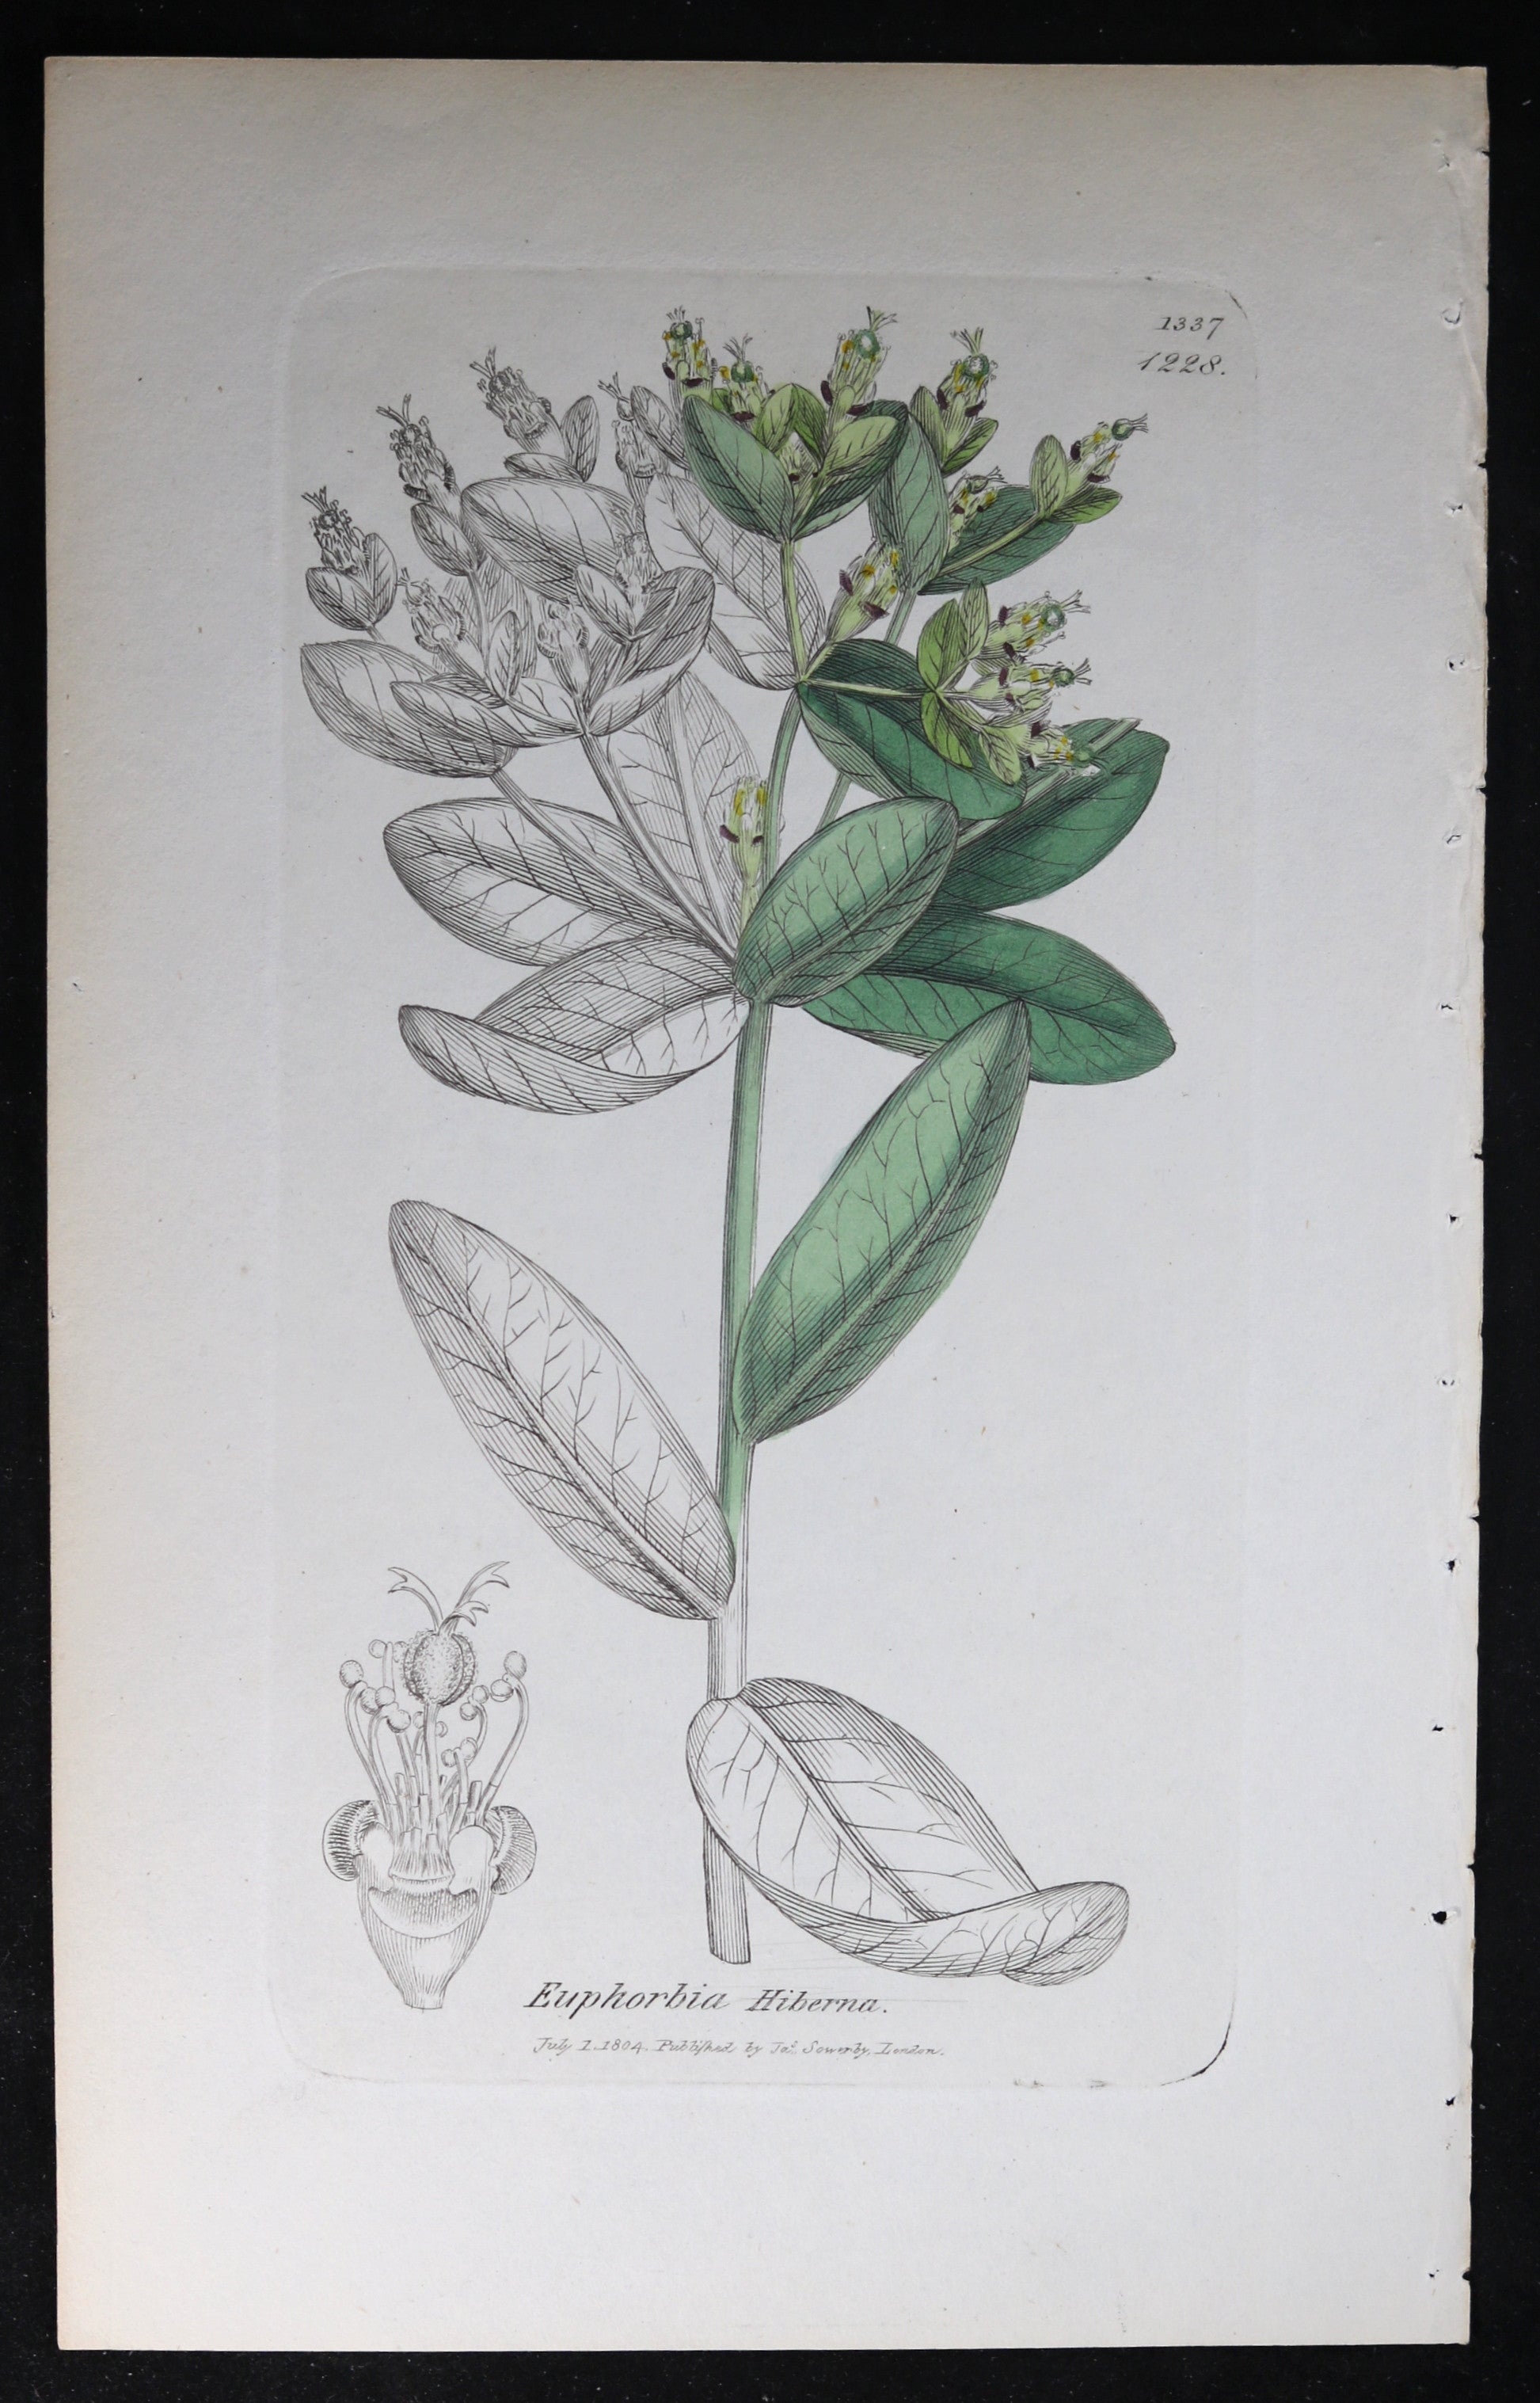 1804 Sowerby botanical print Irish Splurge